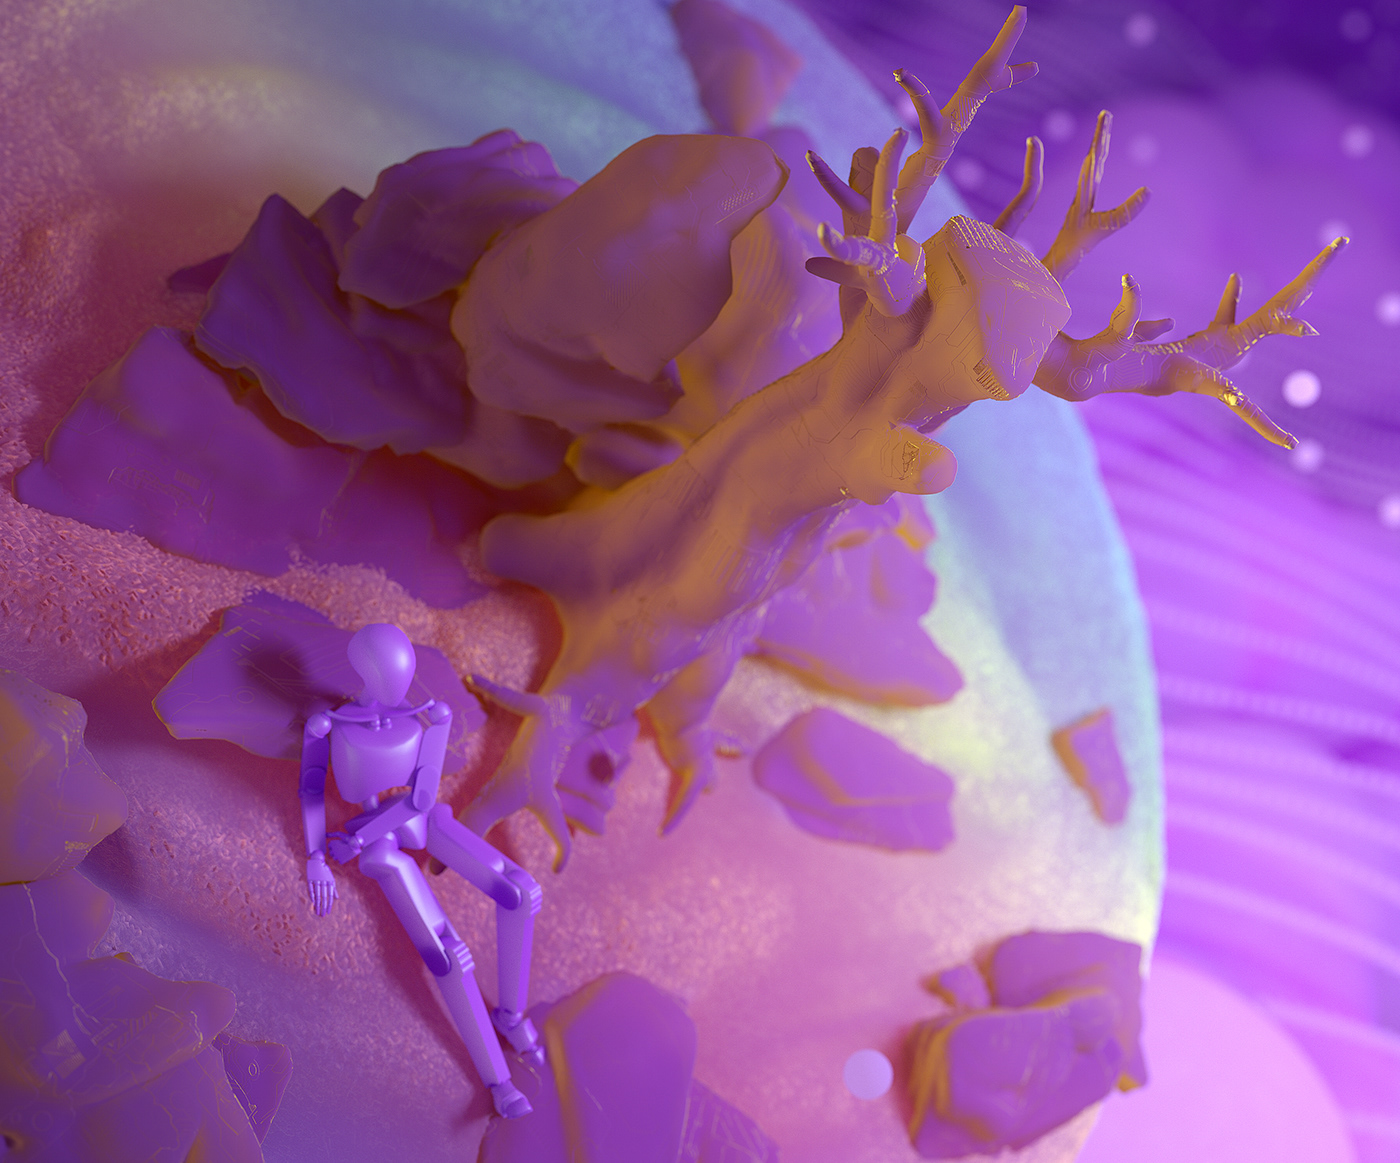 c4d cinema 4d subsurface scattering SSS light 3D design purple surreal